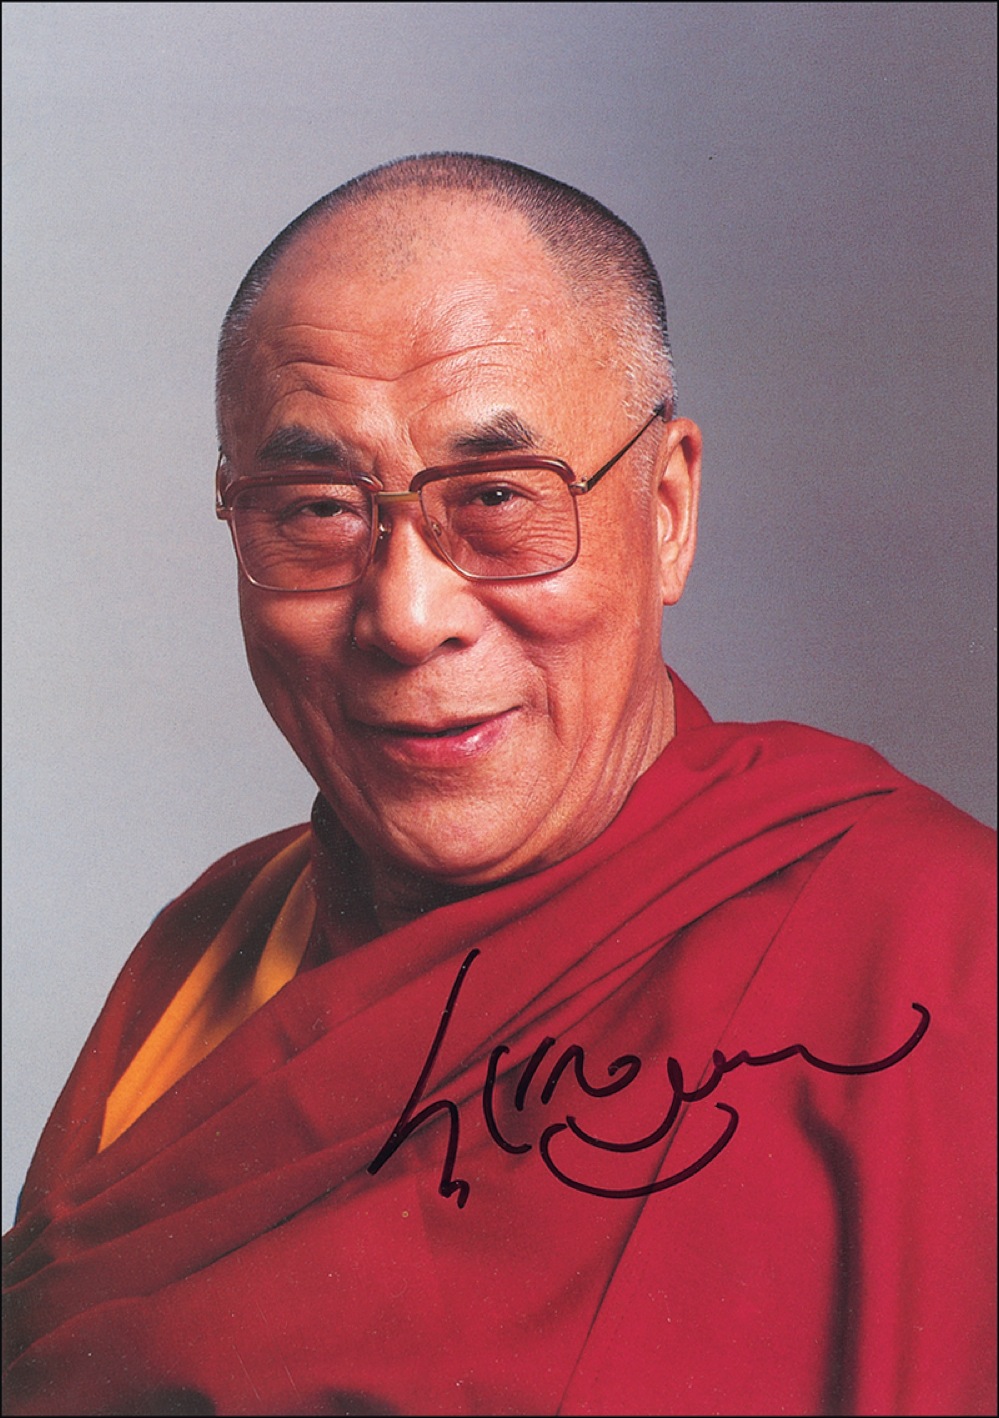 Lot #179 Dalai Lama